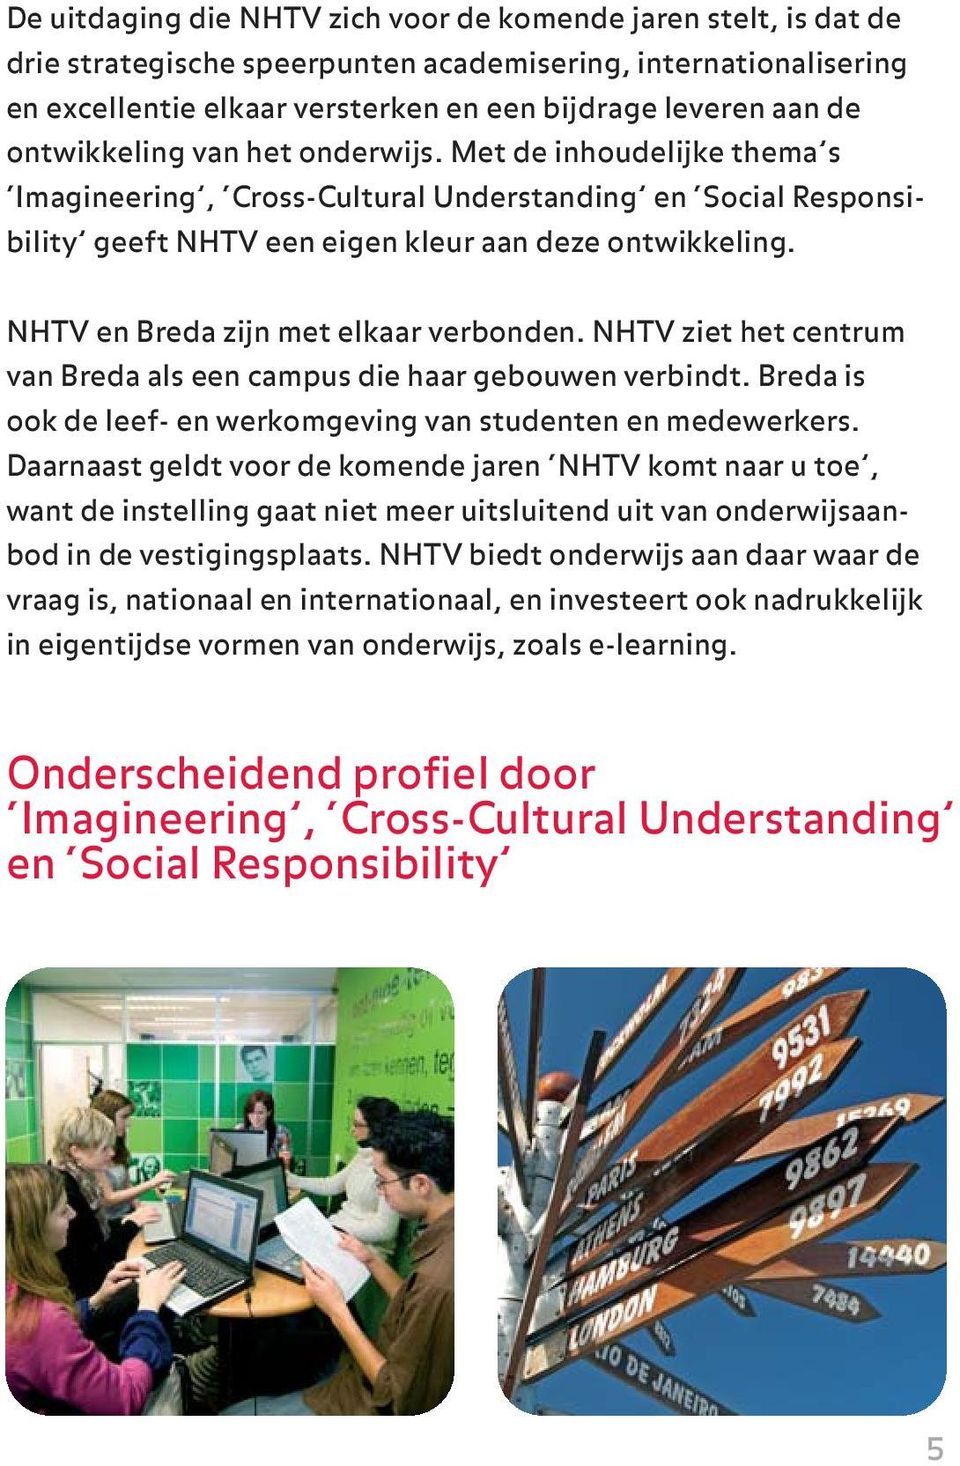 NHTV en Breda zijn met elkaar verbonden. NHTV ziet het centrum van Breda als een campus die haar gebouwen verbindt. Breda is ook de leef- en werkomgeving van studenten en medewerkers.